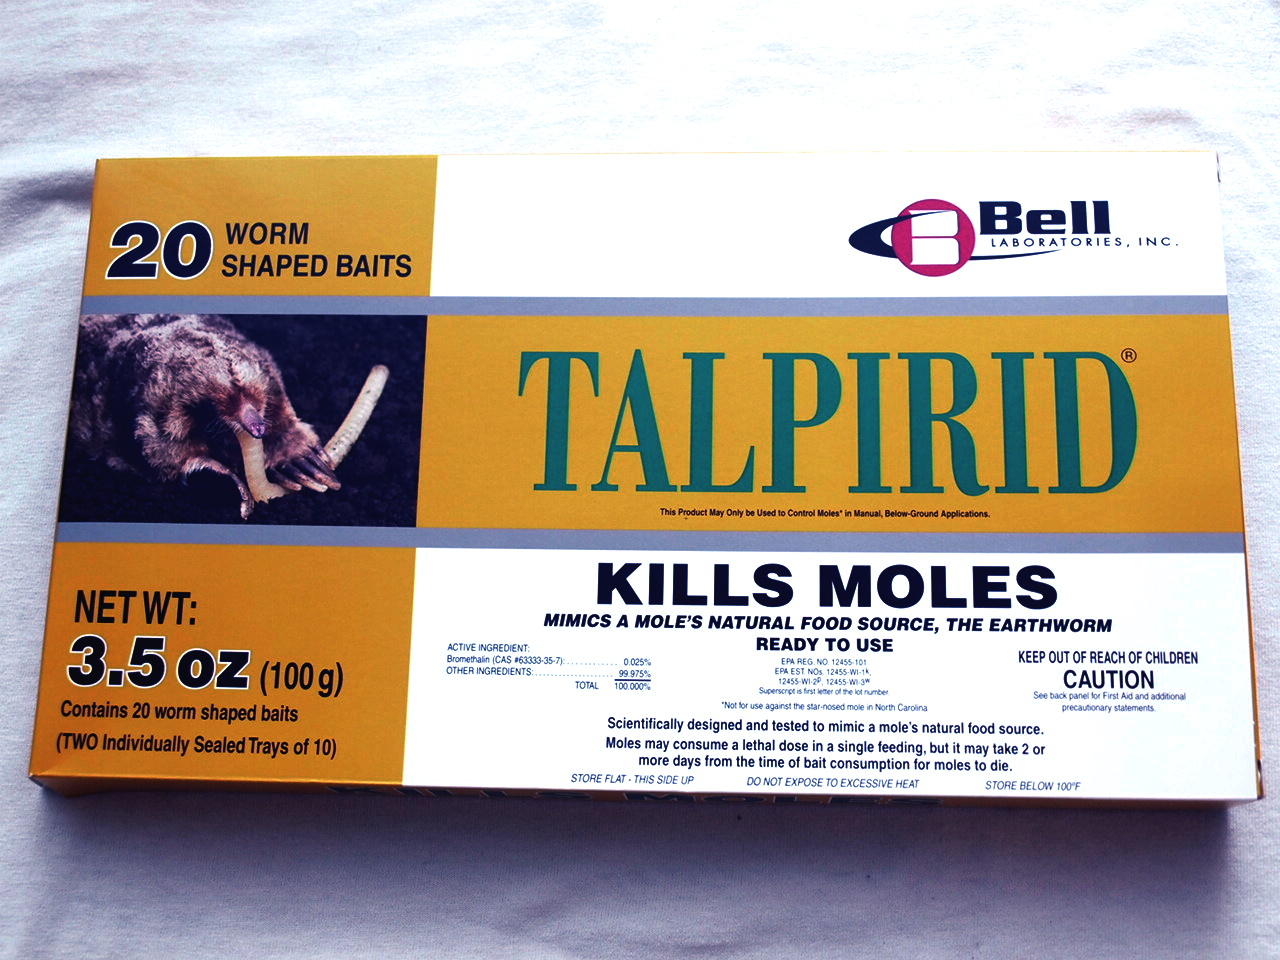 Talpirid Mole Bait kills Lawn Moles